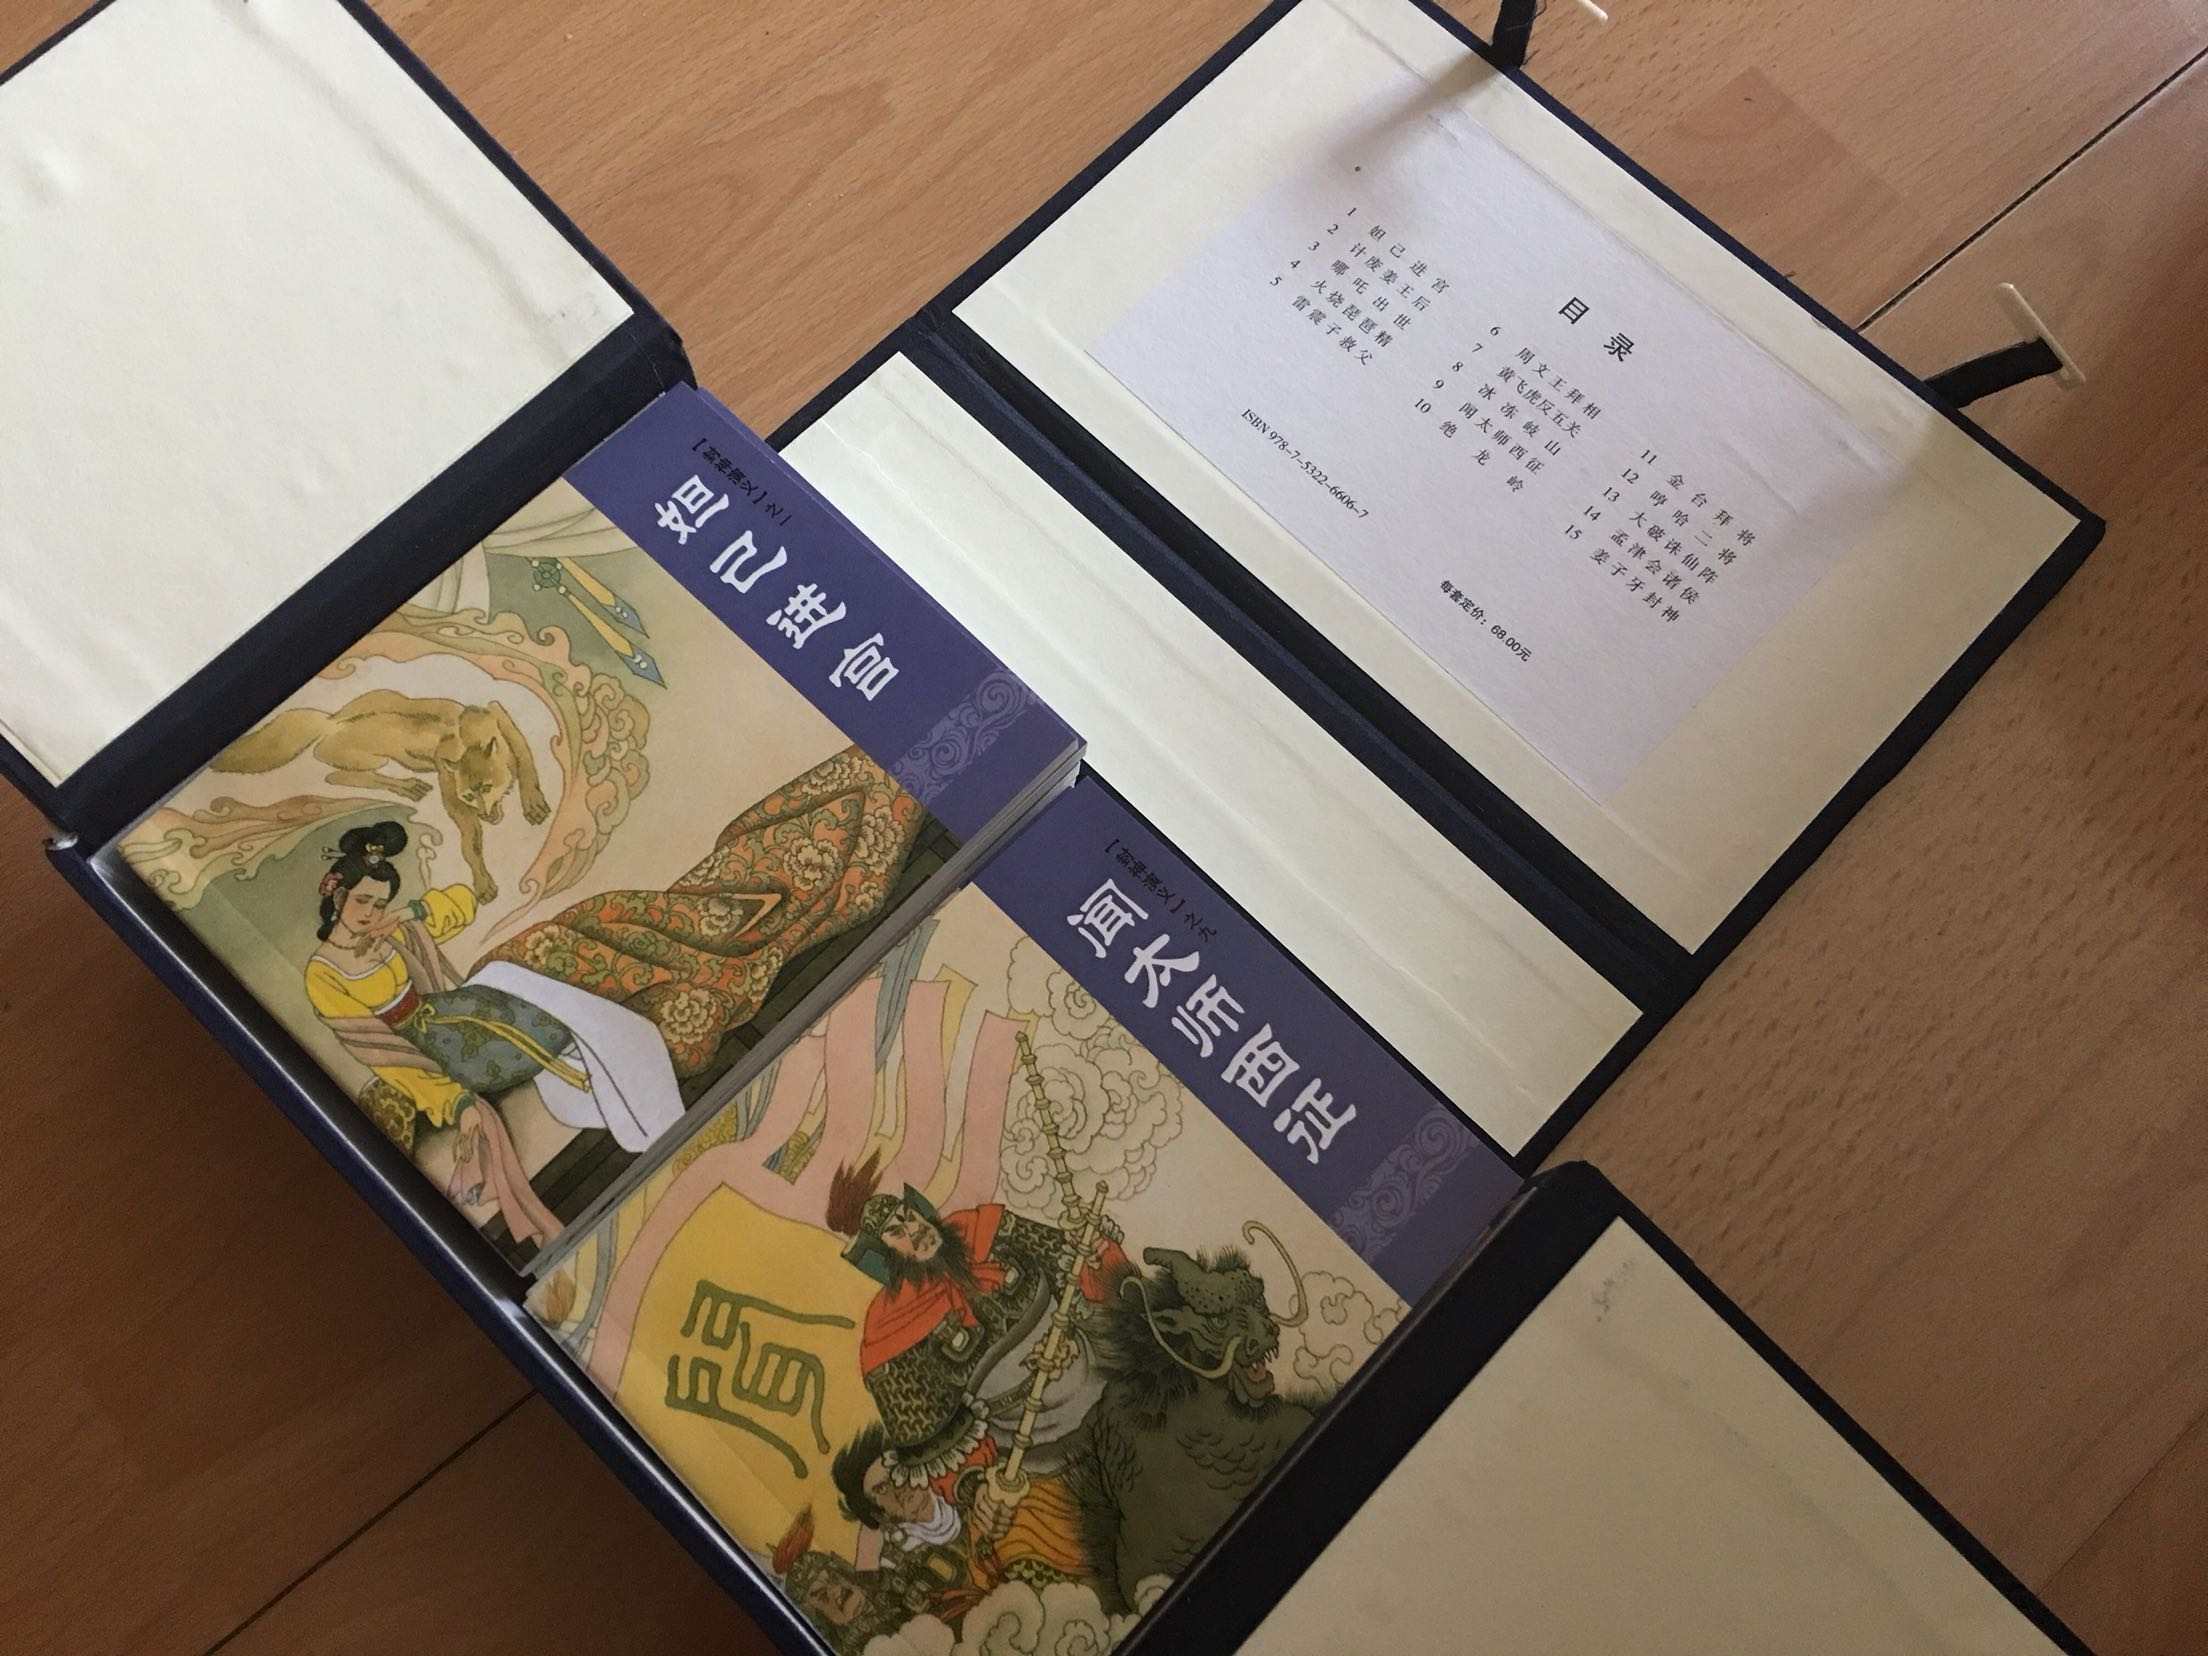 包装好，印刷纸张都不错，老版绘本非常喜欢。但第一次对自营的物流速度感到失望，在北京5月31日下单，6月3日才收到货。